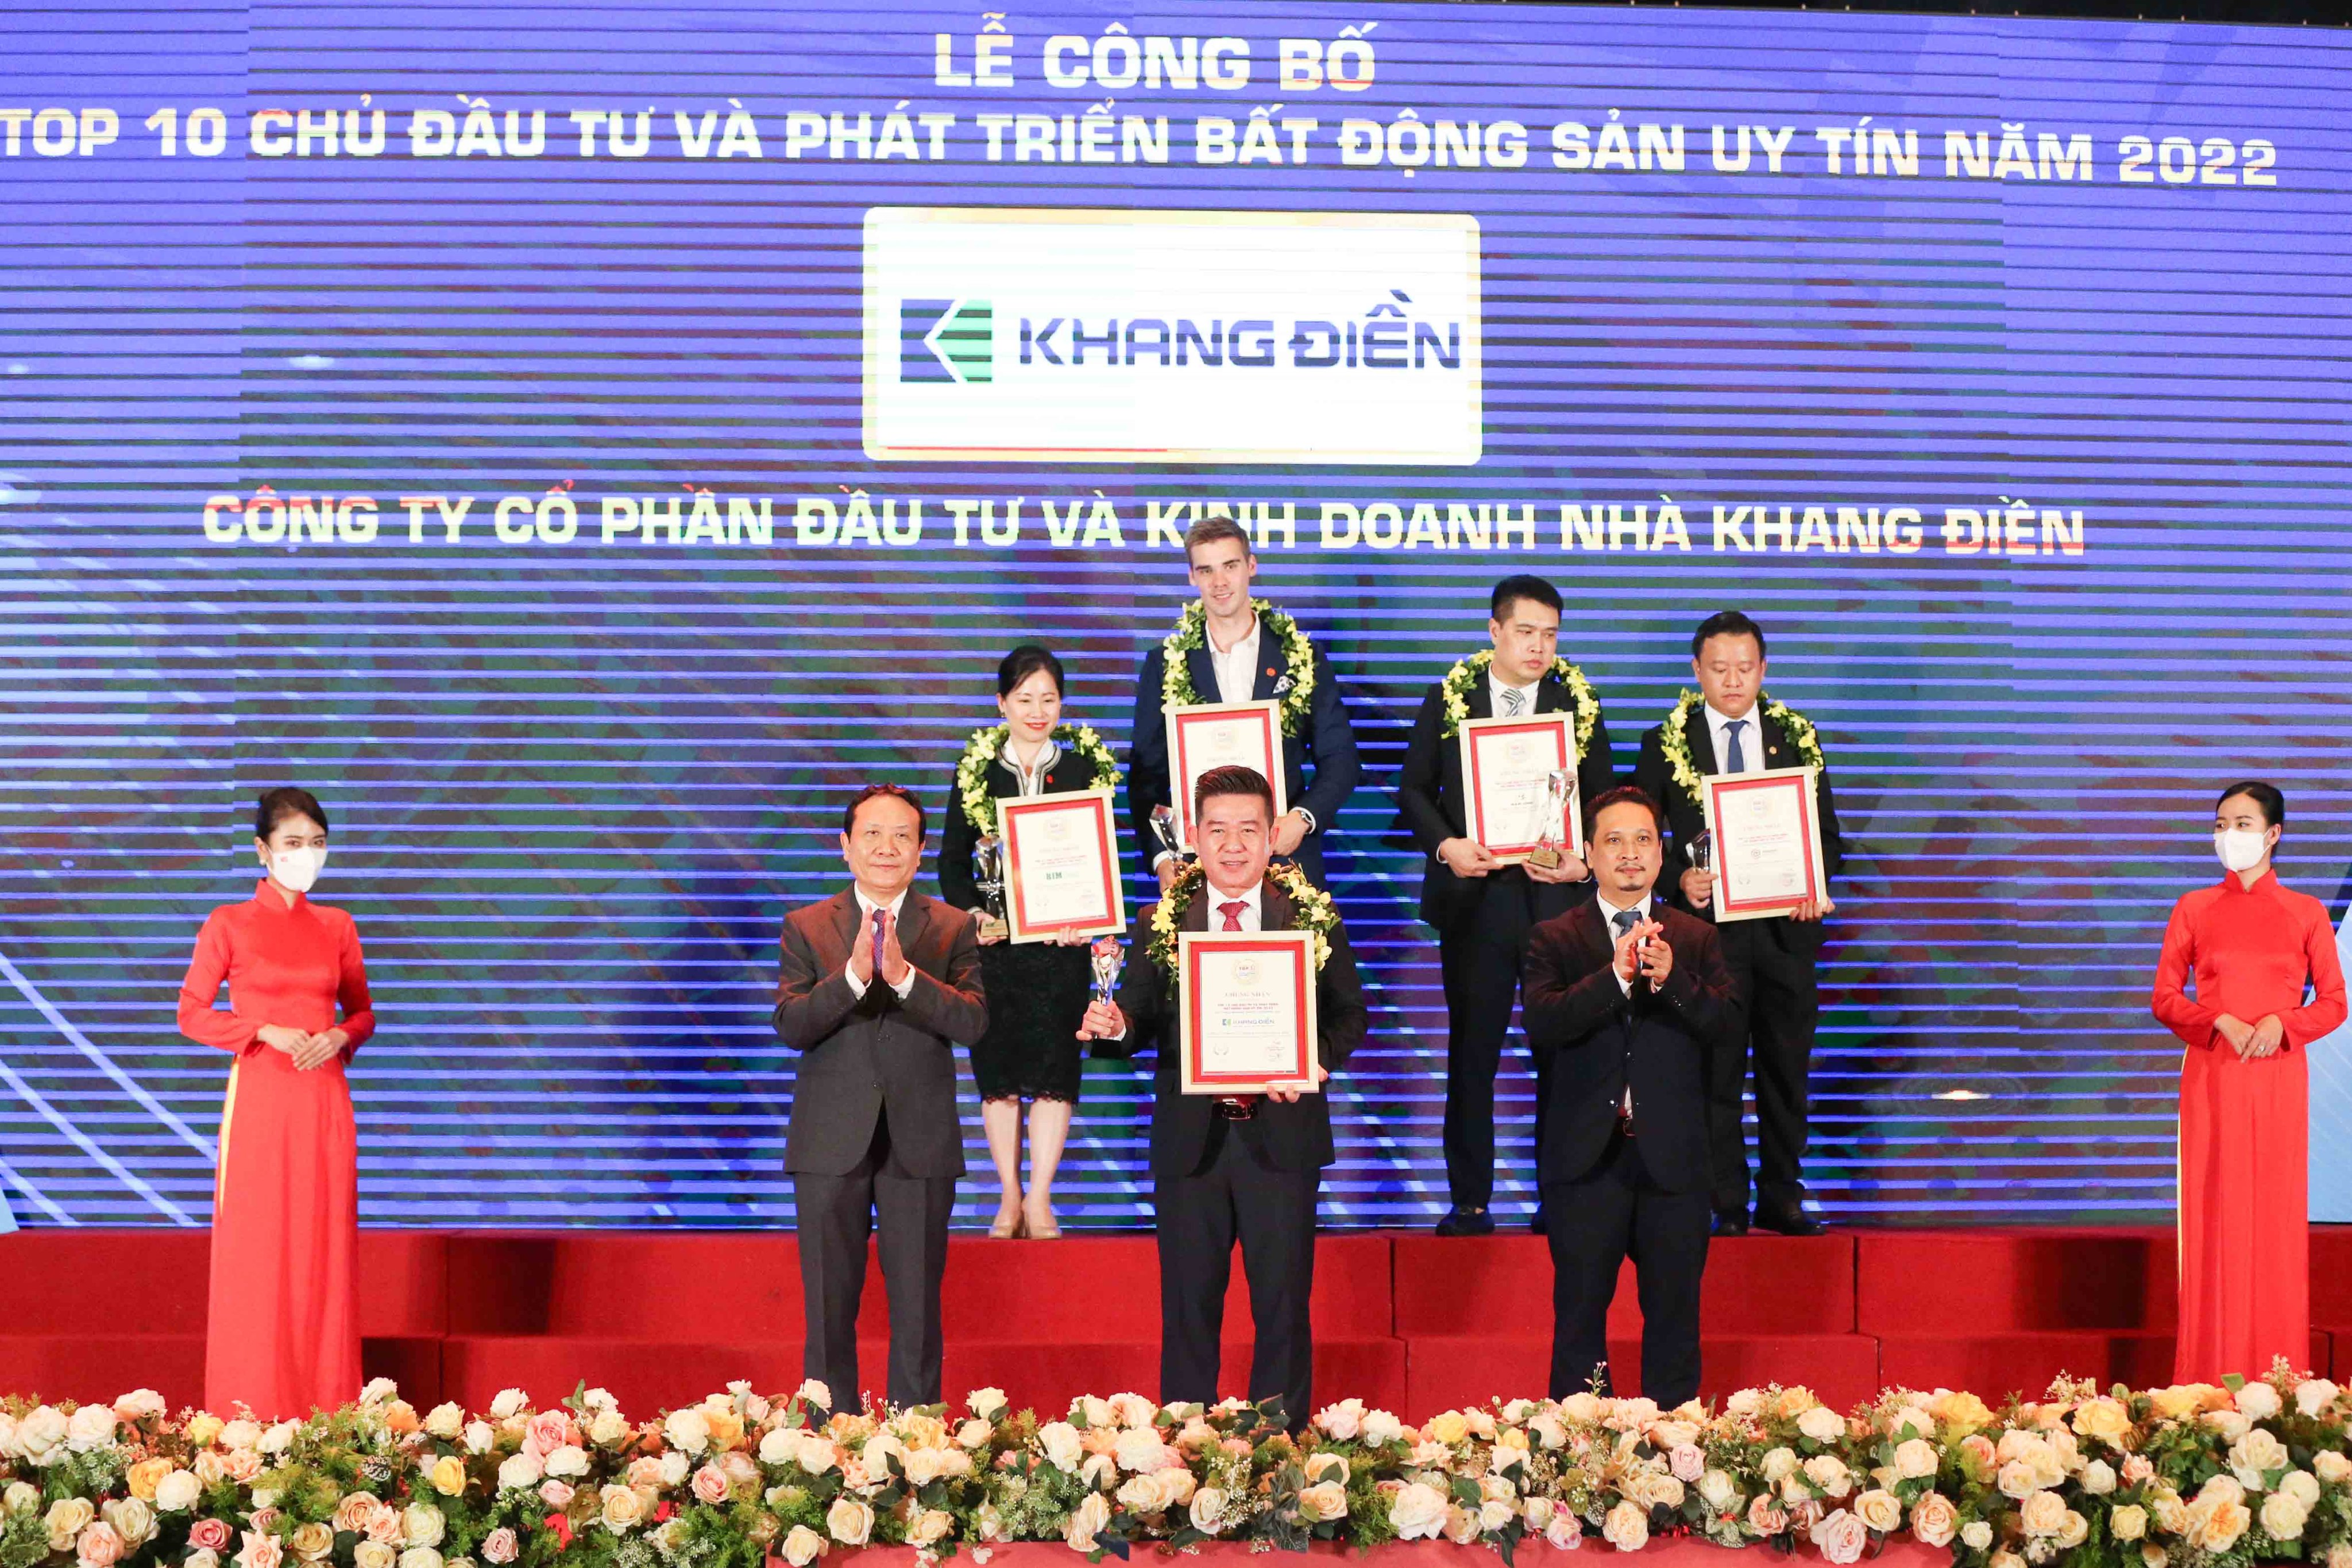 Tập đoàn Khang Điền (KDH) lần thứ 5 đạt top 10 chủ đầu tư & phát triển BĐS uy tín 